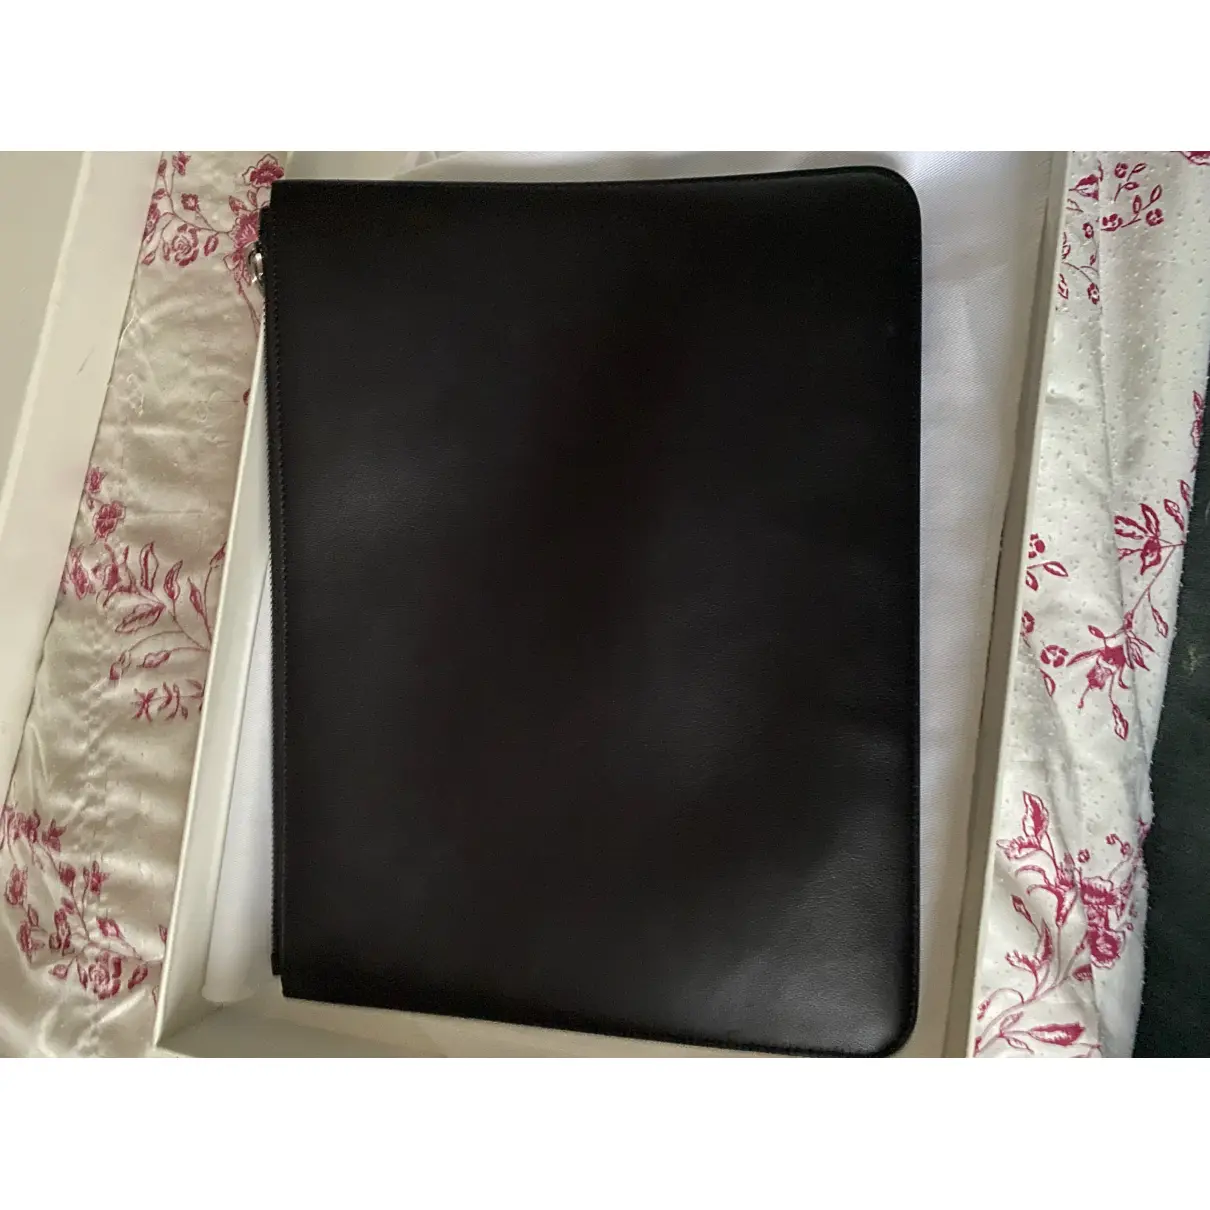 Buy Givenchy Emblem leather clutch bag online